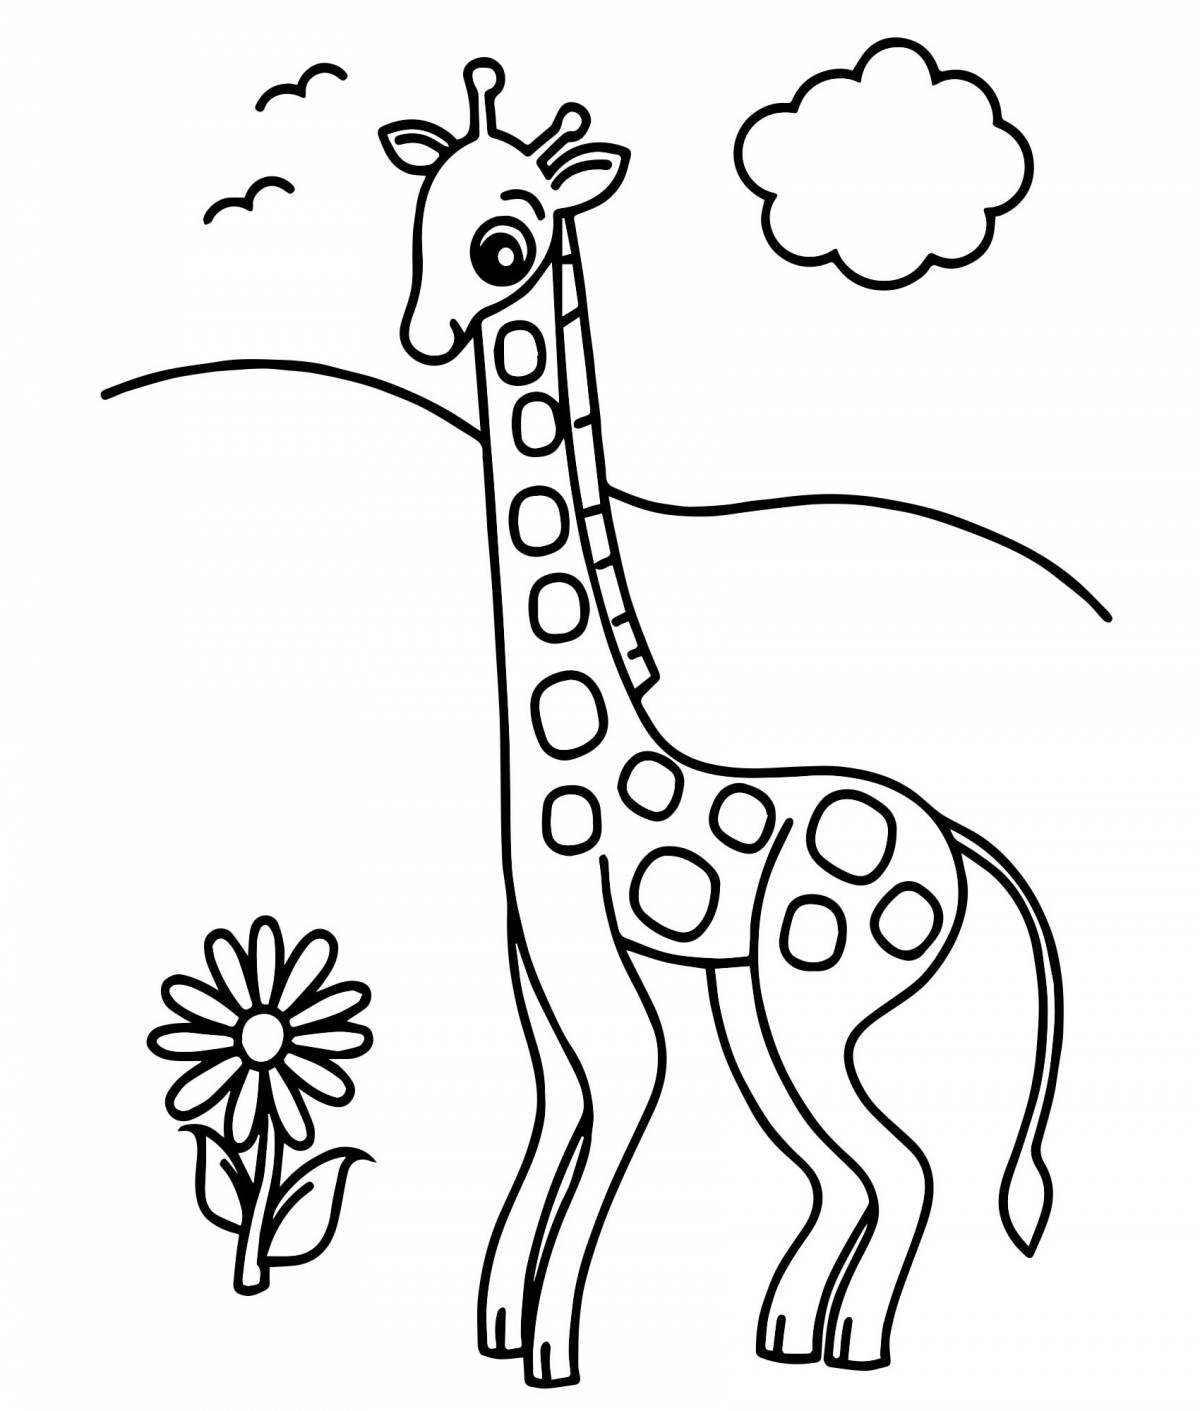 Анимированная страница раскраски жирафа